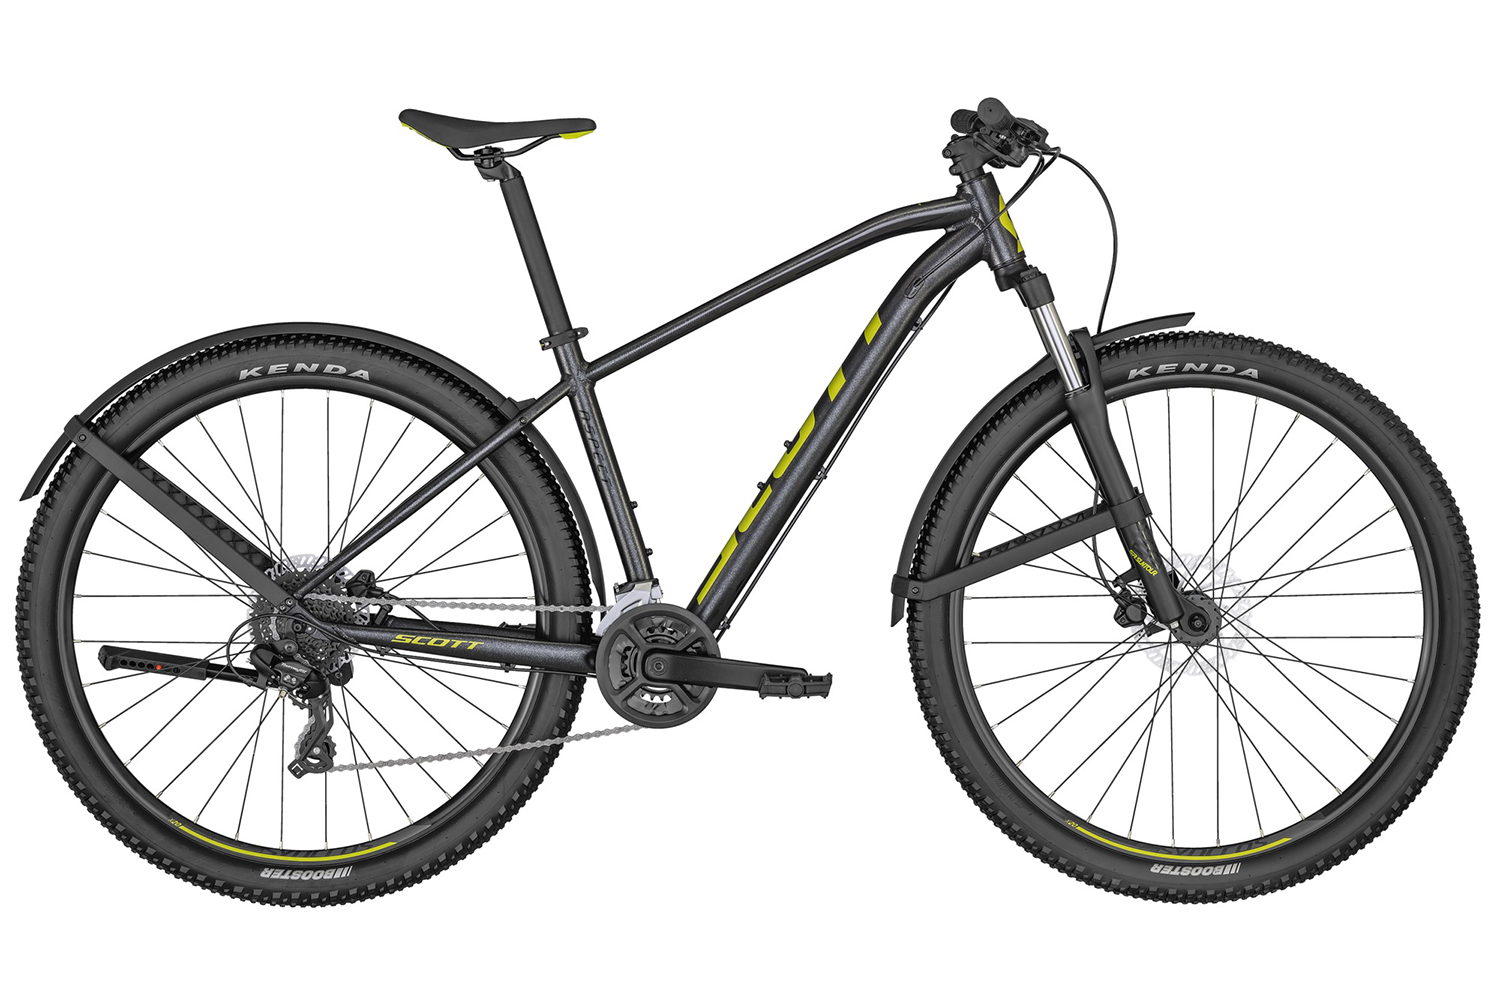  Отзывы о Горном велосипеде Scott Aspect 760 EQ 2022